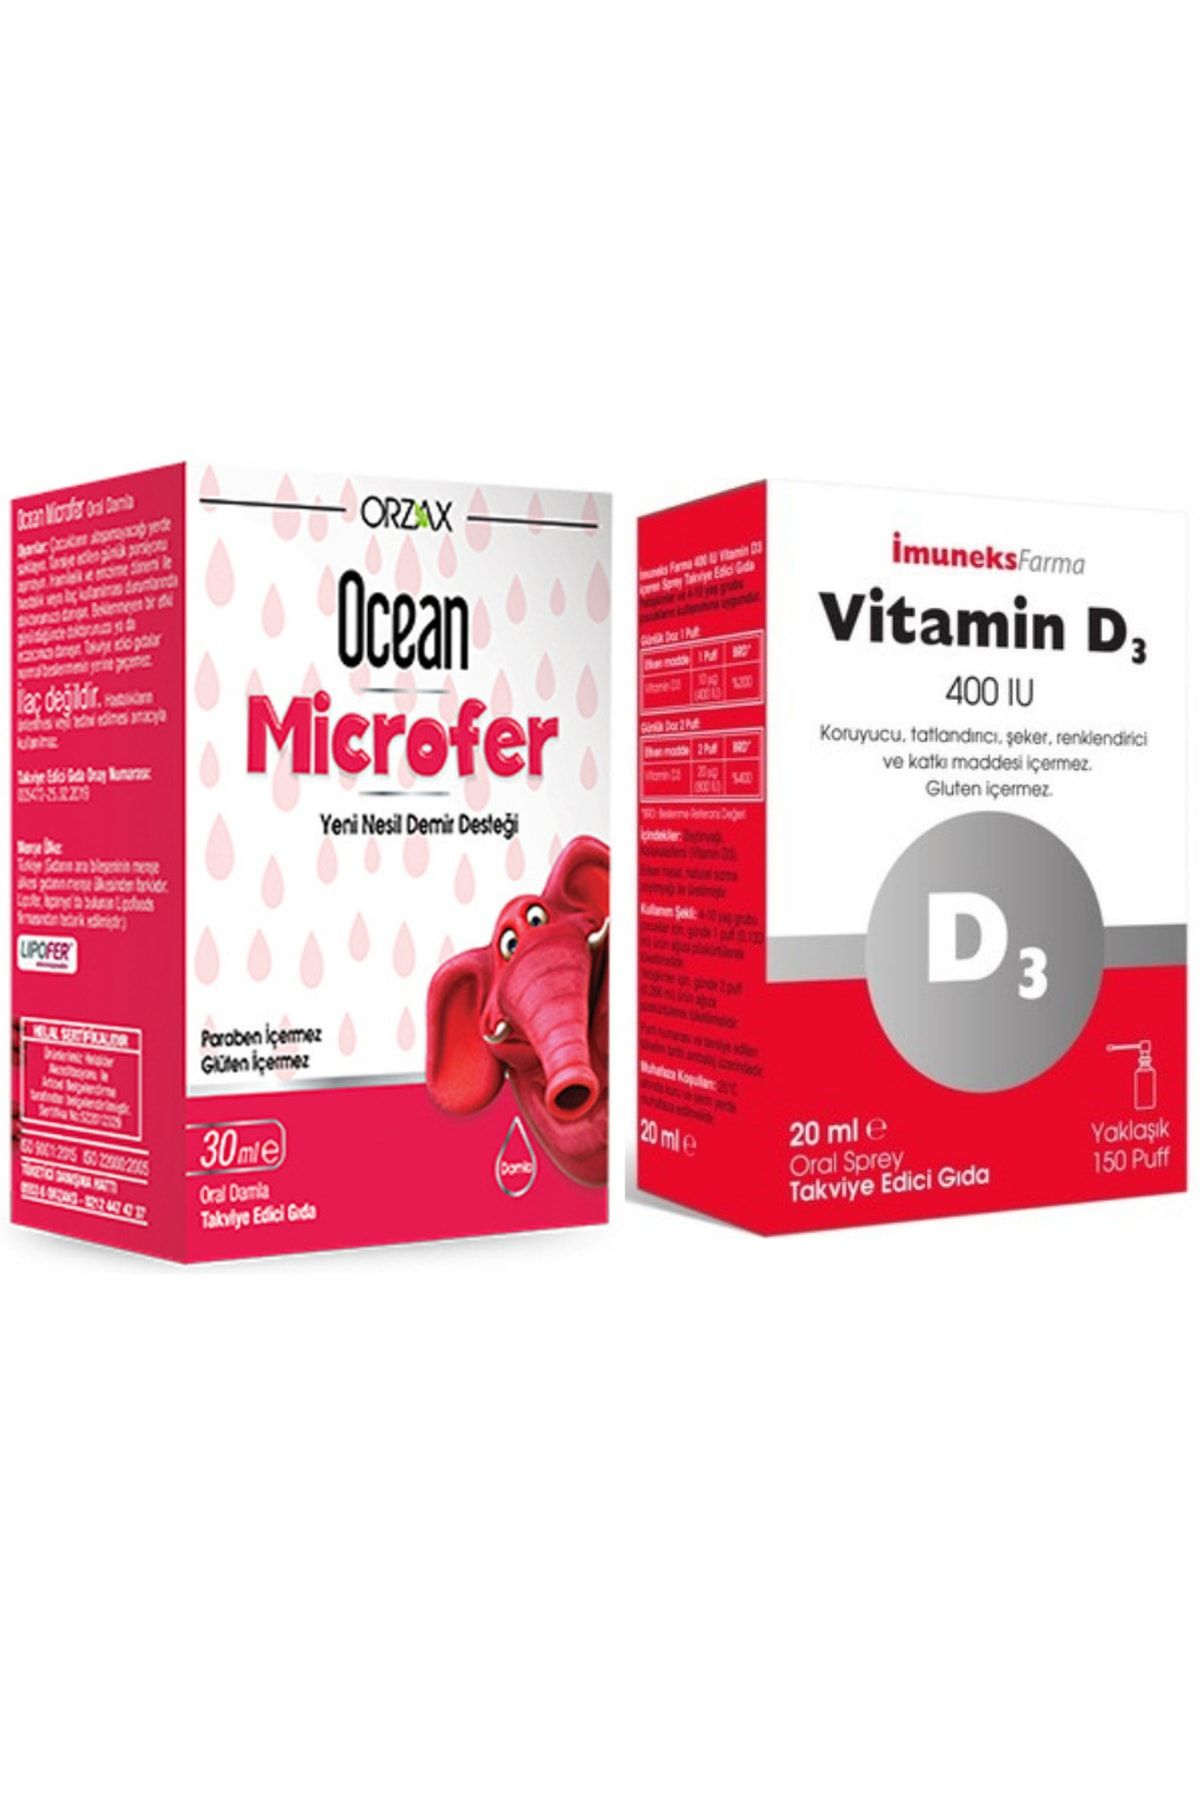 Ocean Microfer Damla 30ml + Imuneks Farma Vitamin D3 400ıu 20ml